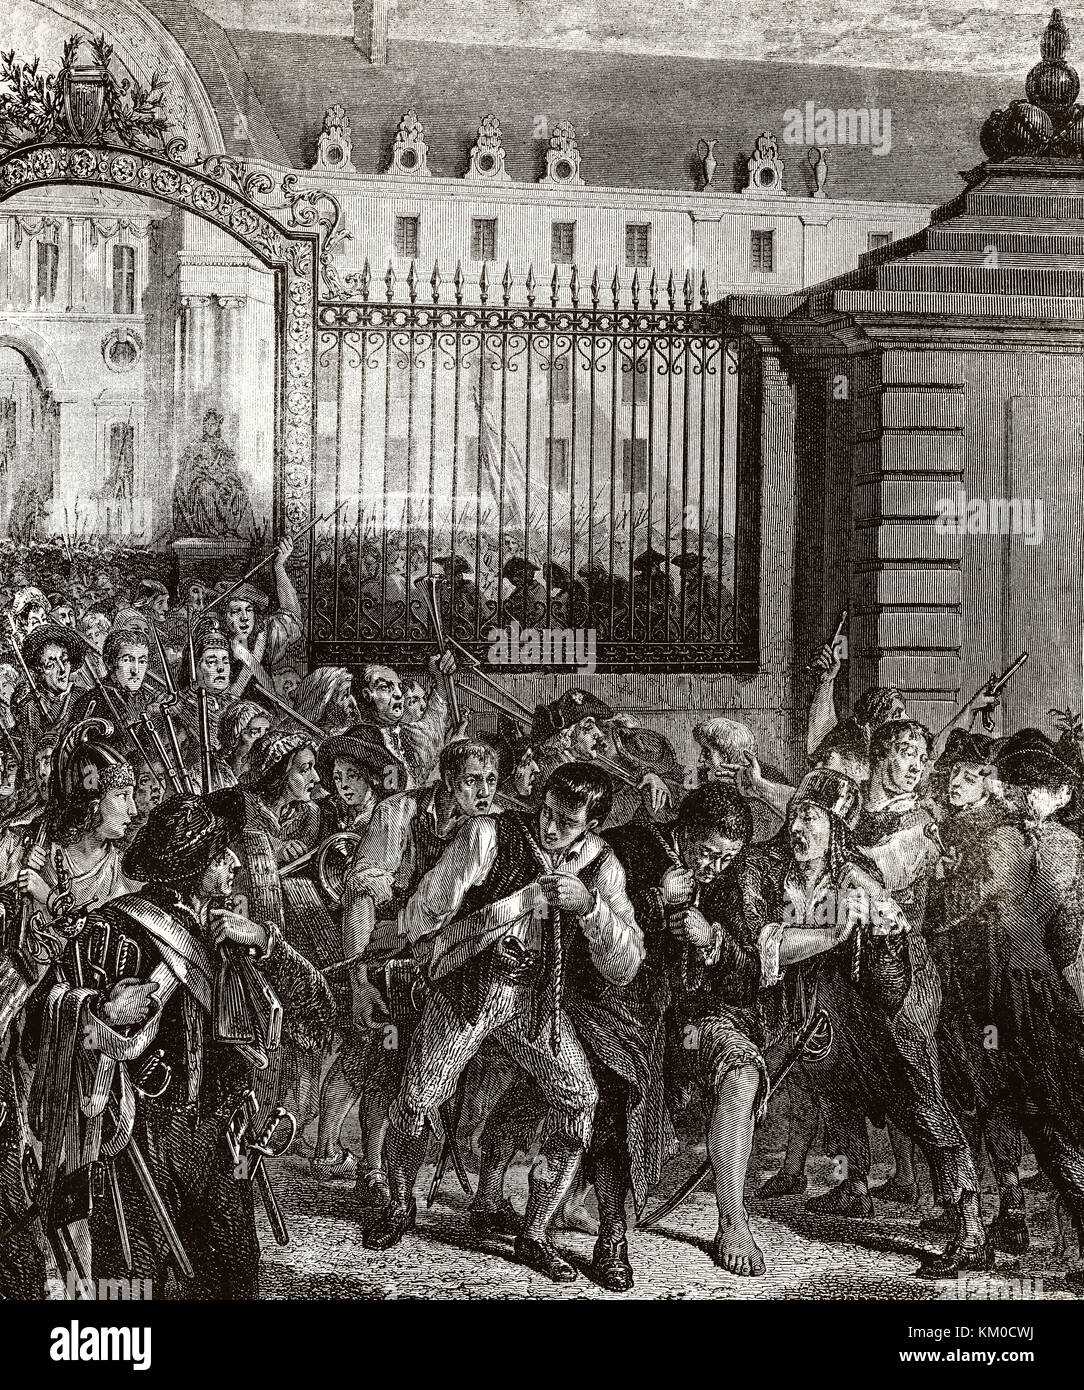 La prise de la Bastille en 1789, le symbolique début de la Révolution française Banque D'Images